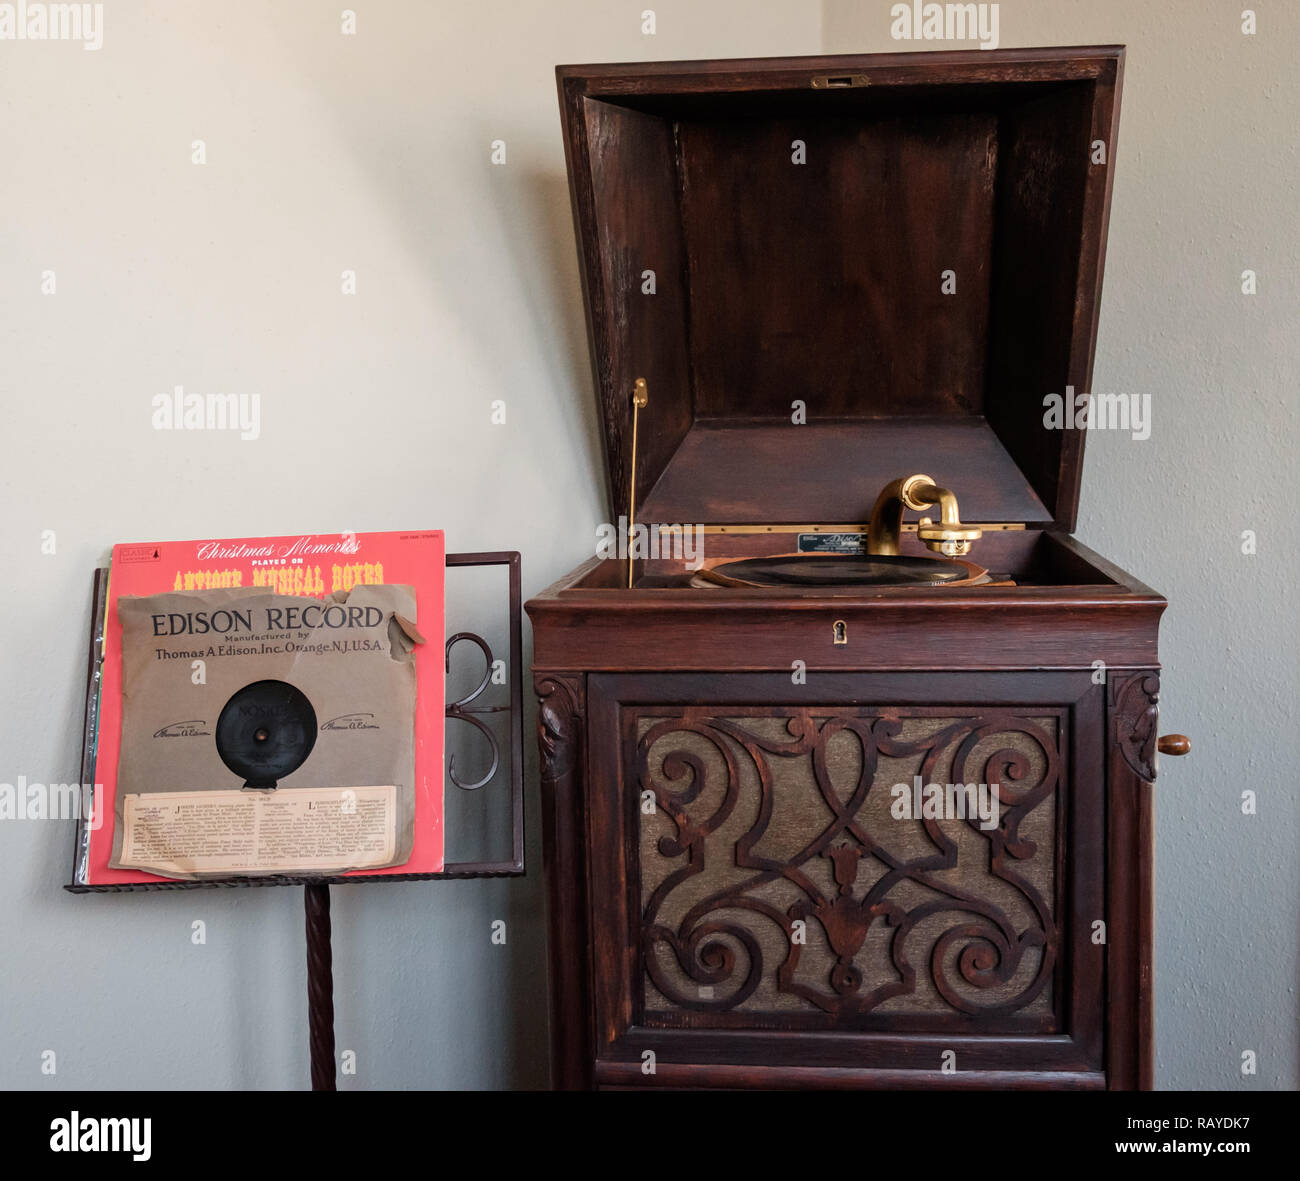 Antiguo jugador de registro en gabinete de madera con soporte de música & Edison registro. Interior de la histórica Casa tejano, Castaños Square Village, McKinney, Texas. Foto de stock